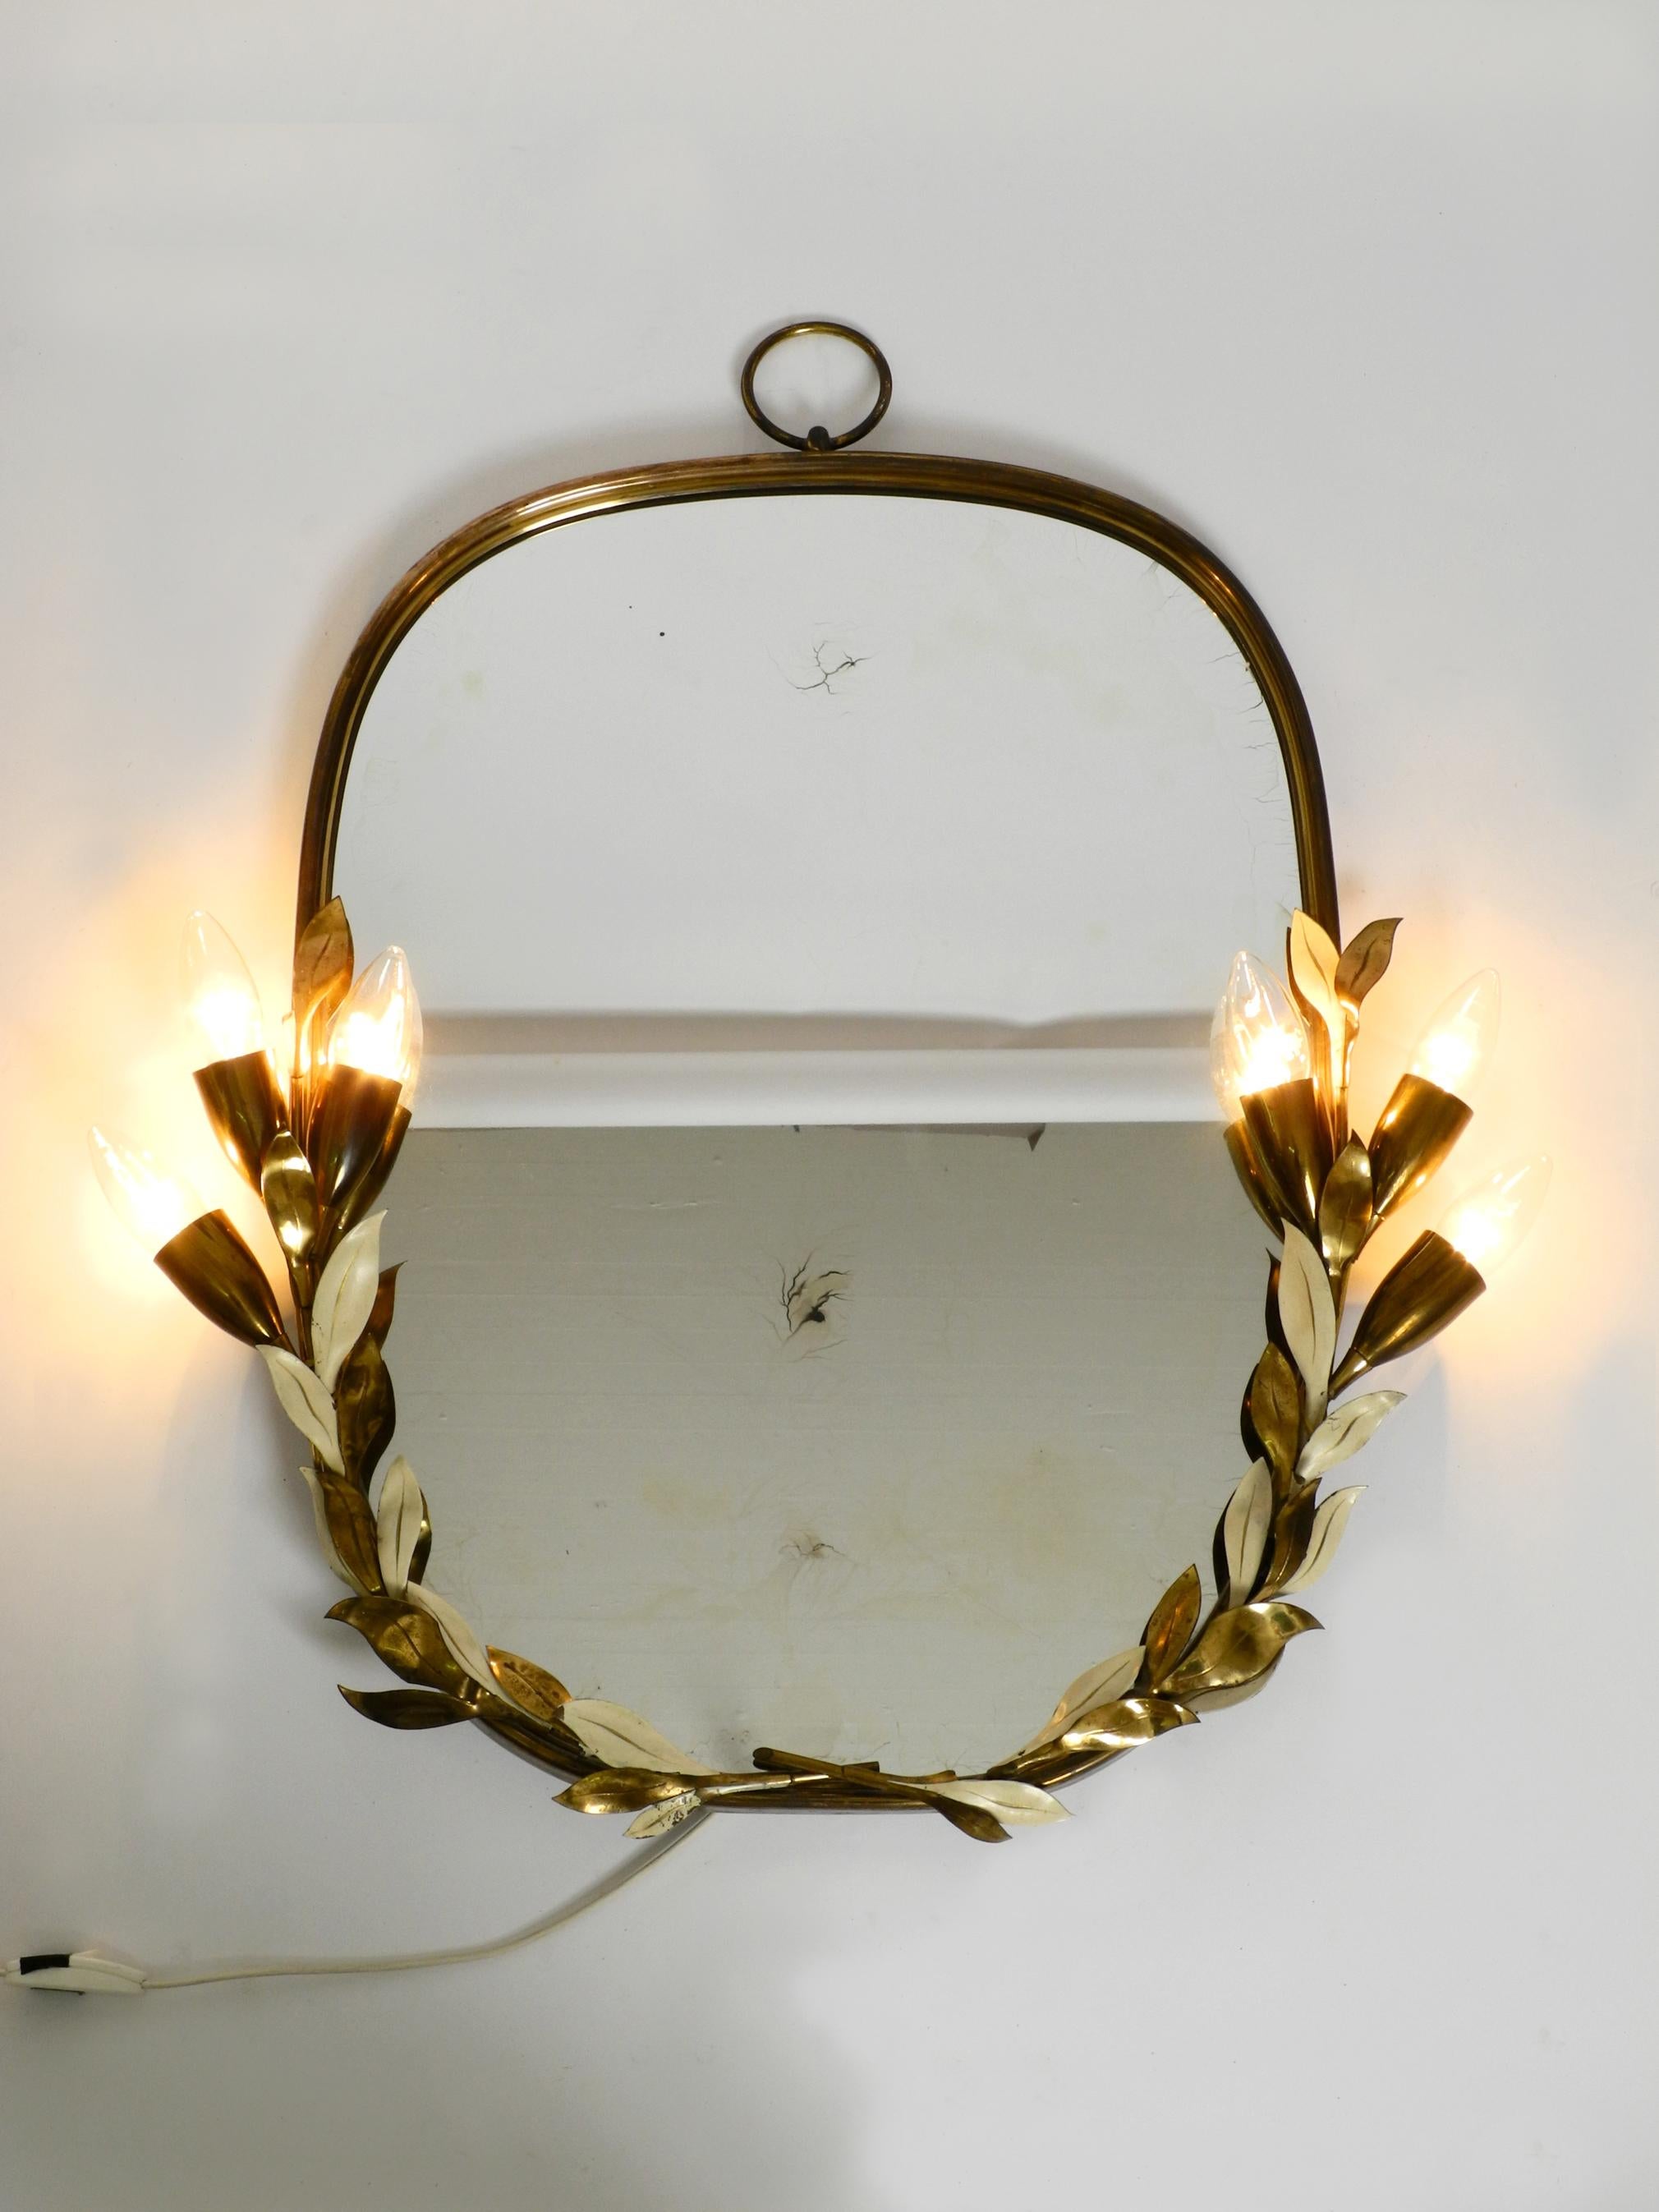 Extraordinaire grand et lourd miroir lumineux floral en laiton.
Fabriqué par Vereinigte Werkstätten. Fabriqué en Allemagne.
Version très rare avec un motif floral, avec de nombreux détails.
Le cadre complet est en laiton pur, certaines feuilles